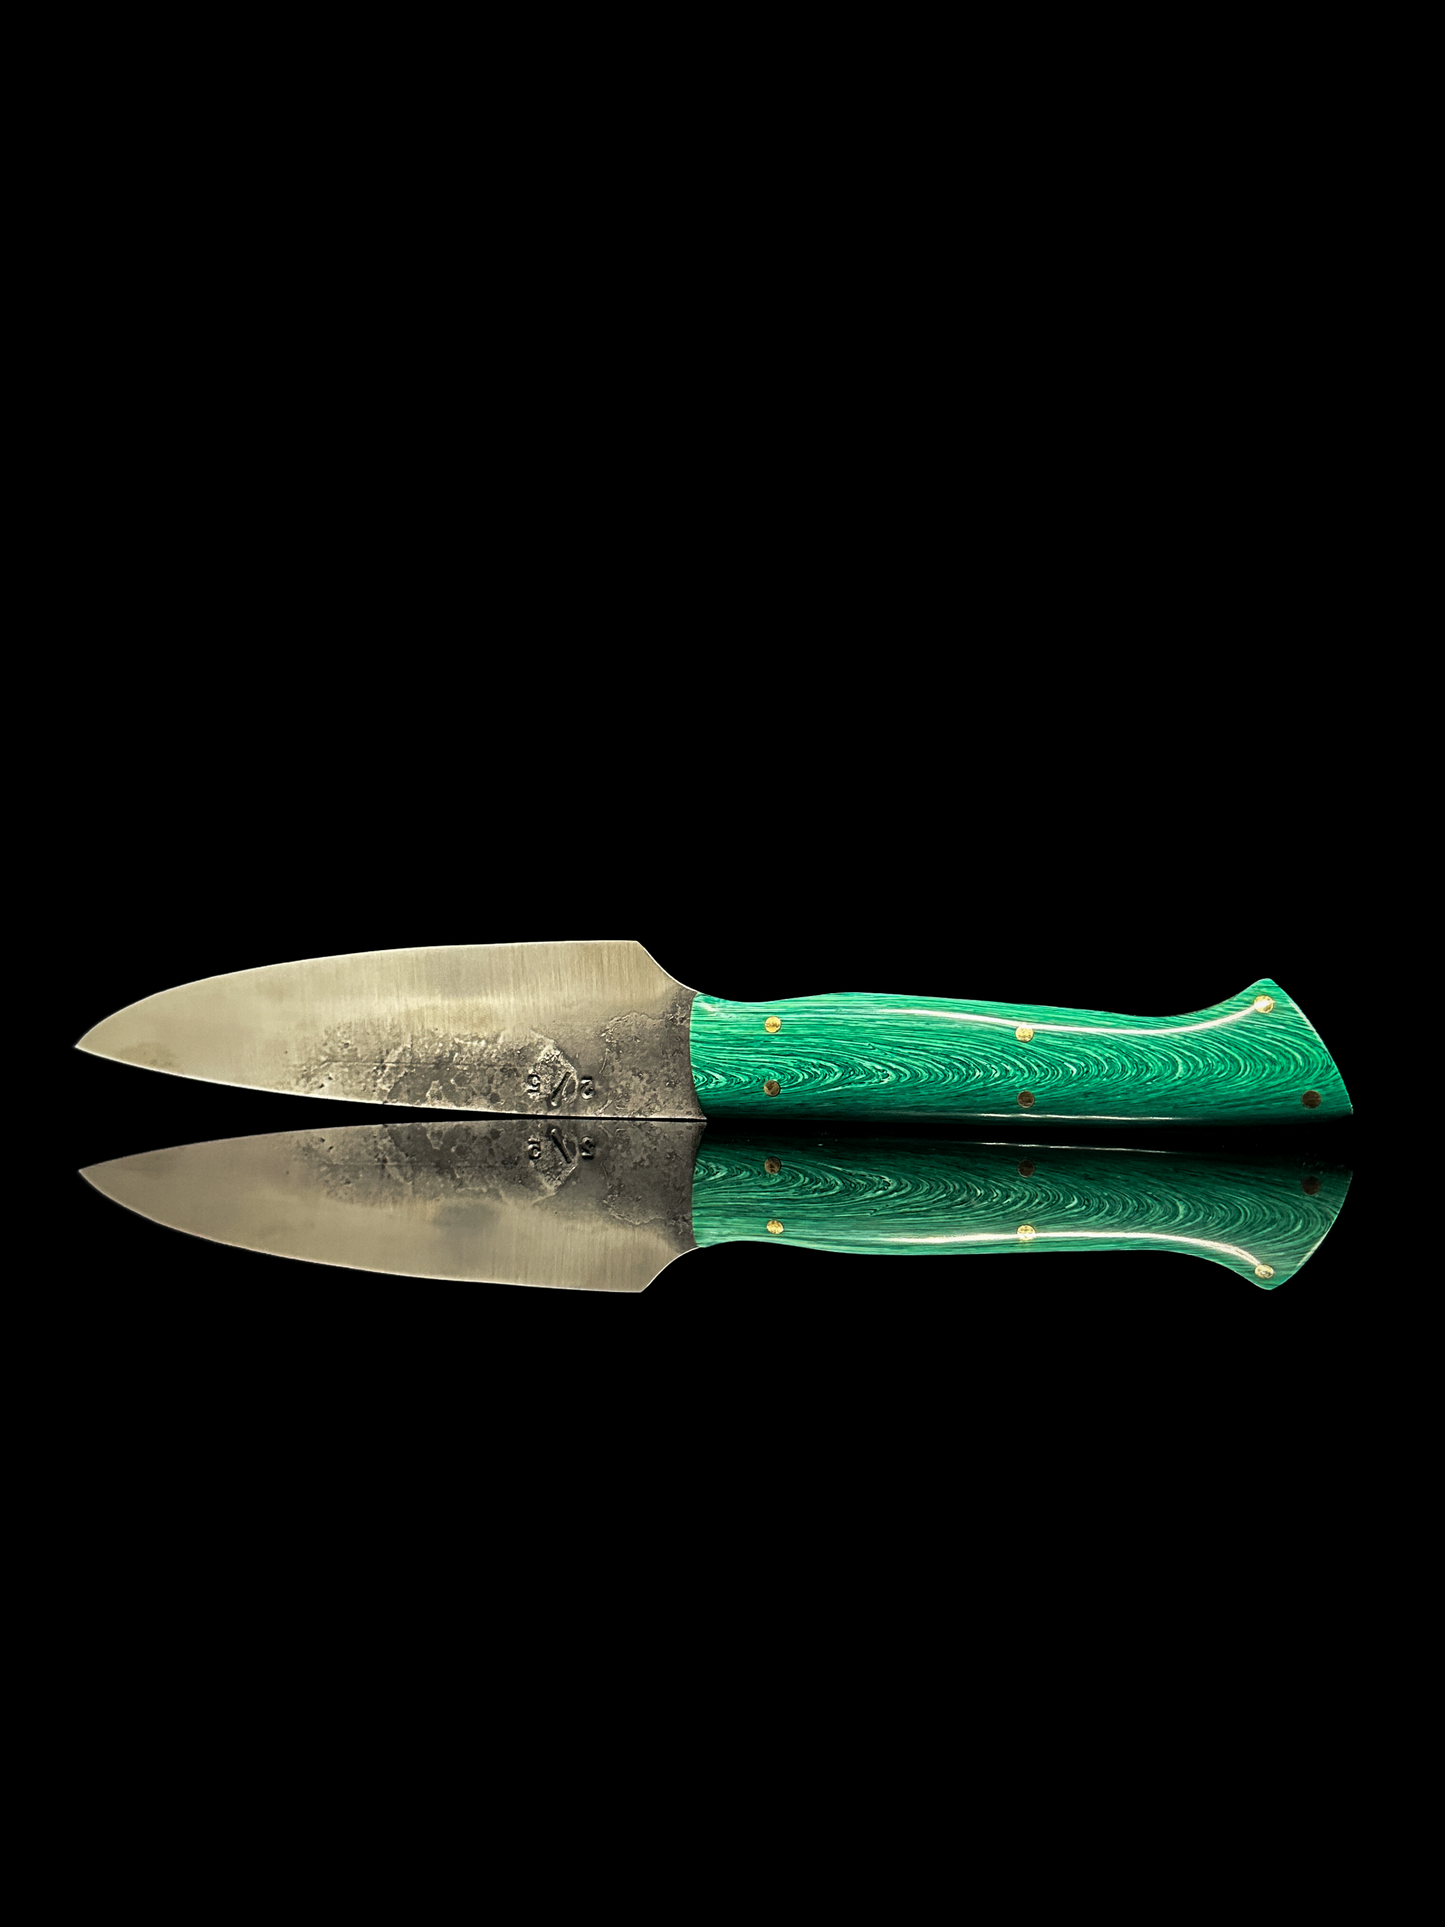 Officemesser, Küchenmesser mit Griff aus grünem JUMA